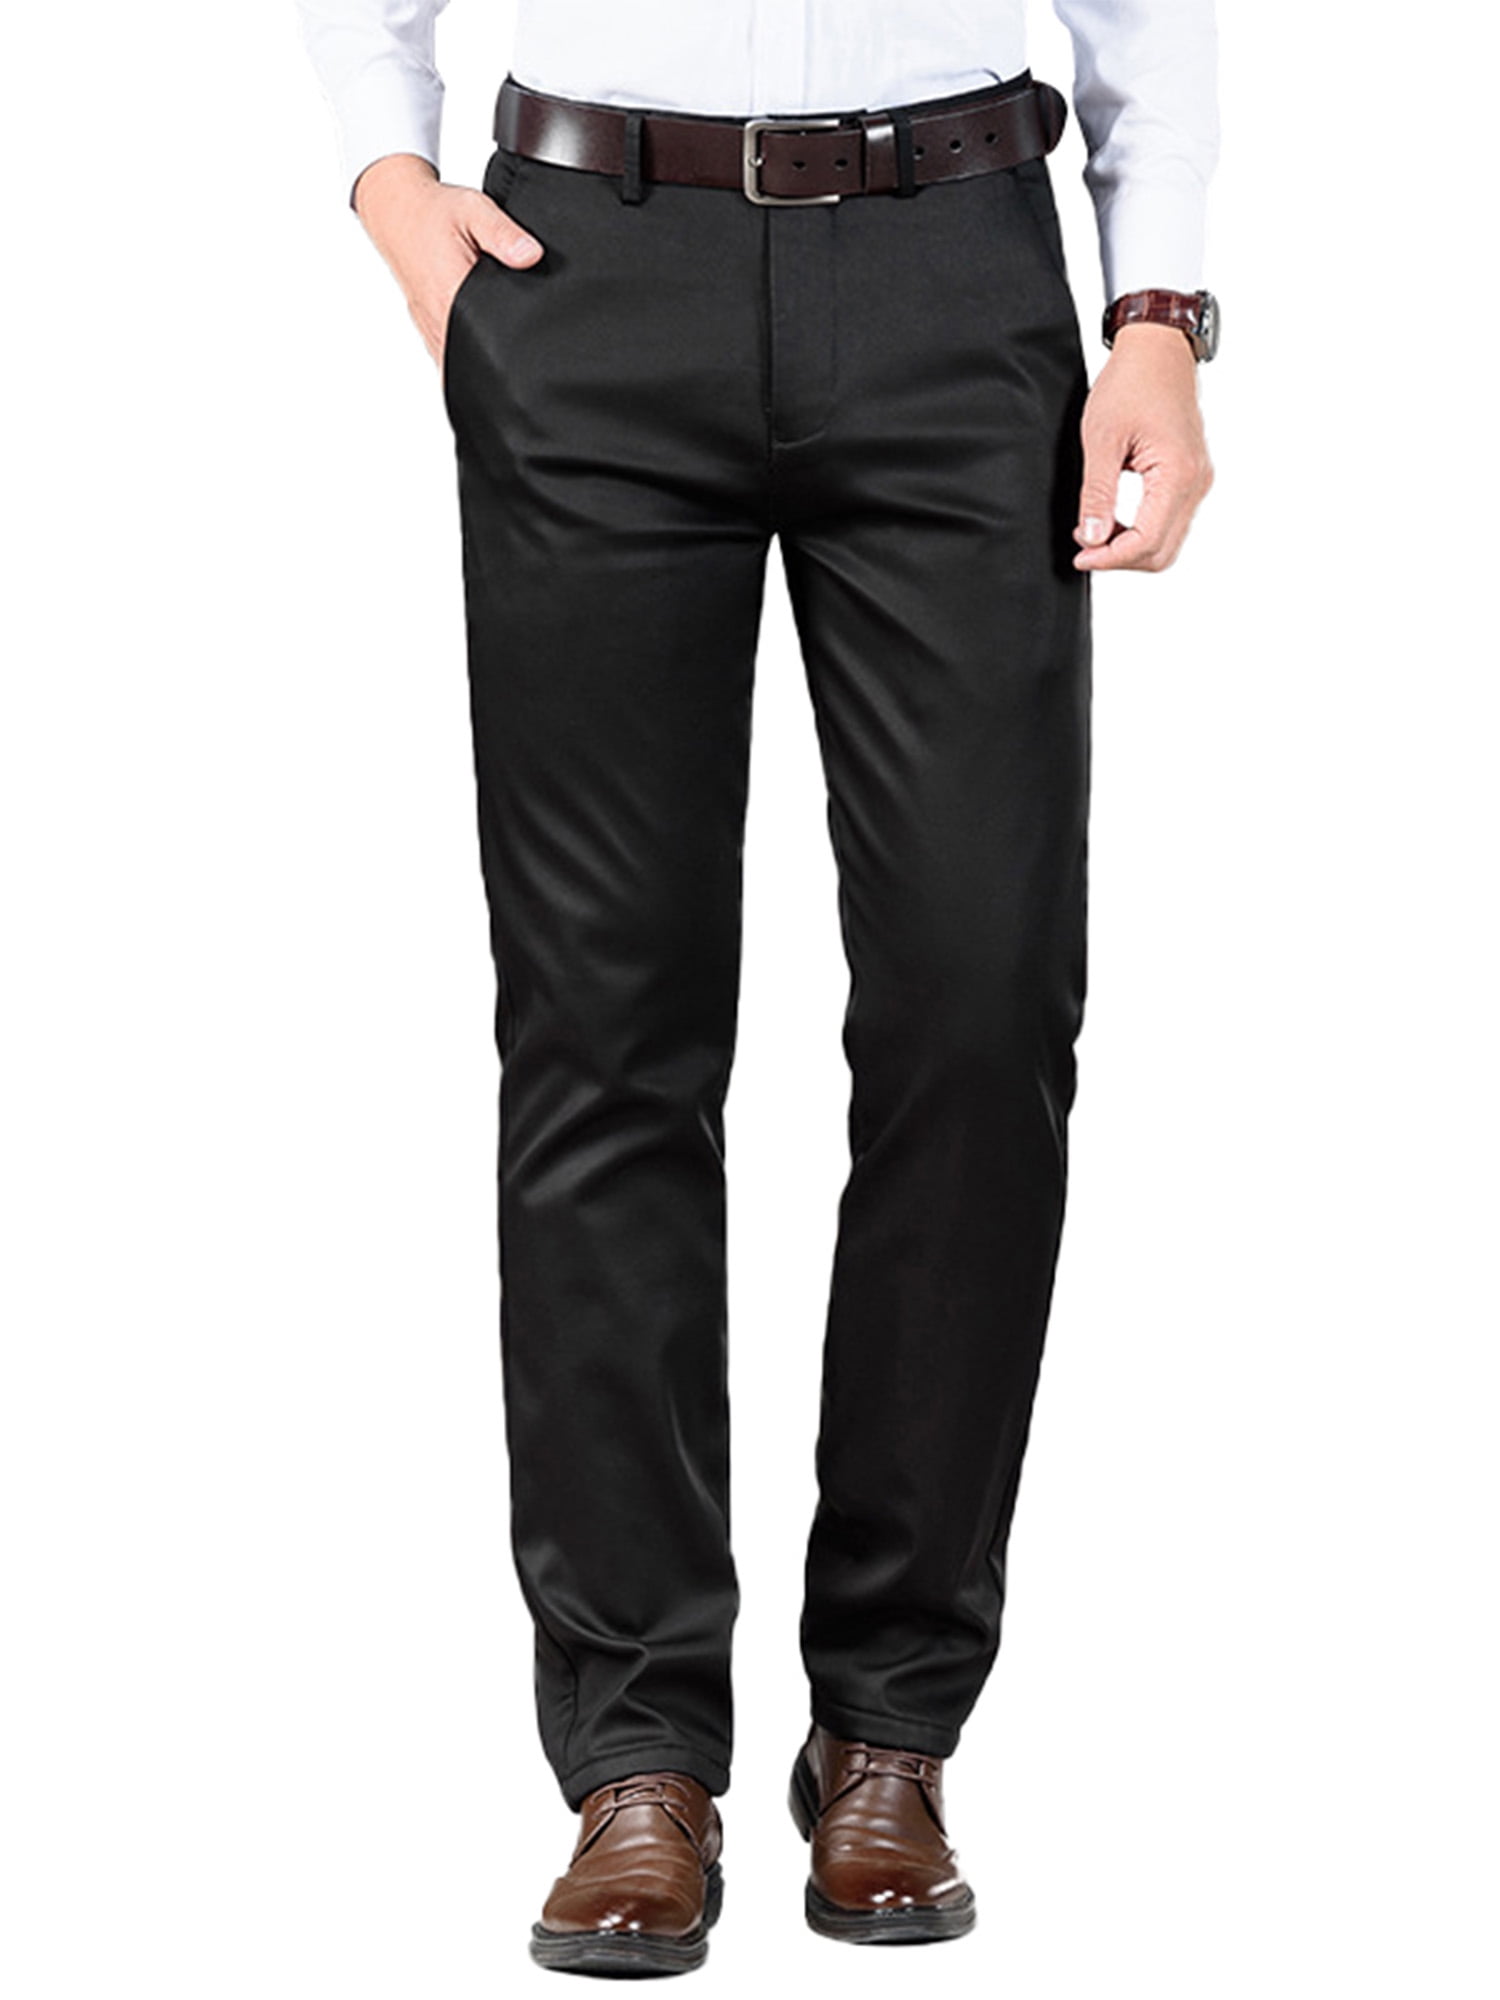 Men's Formal Trousers - Buy Trouser Pants Online for Men – Westside-hkpdtq2012.edu.vn